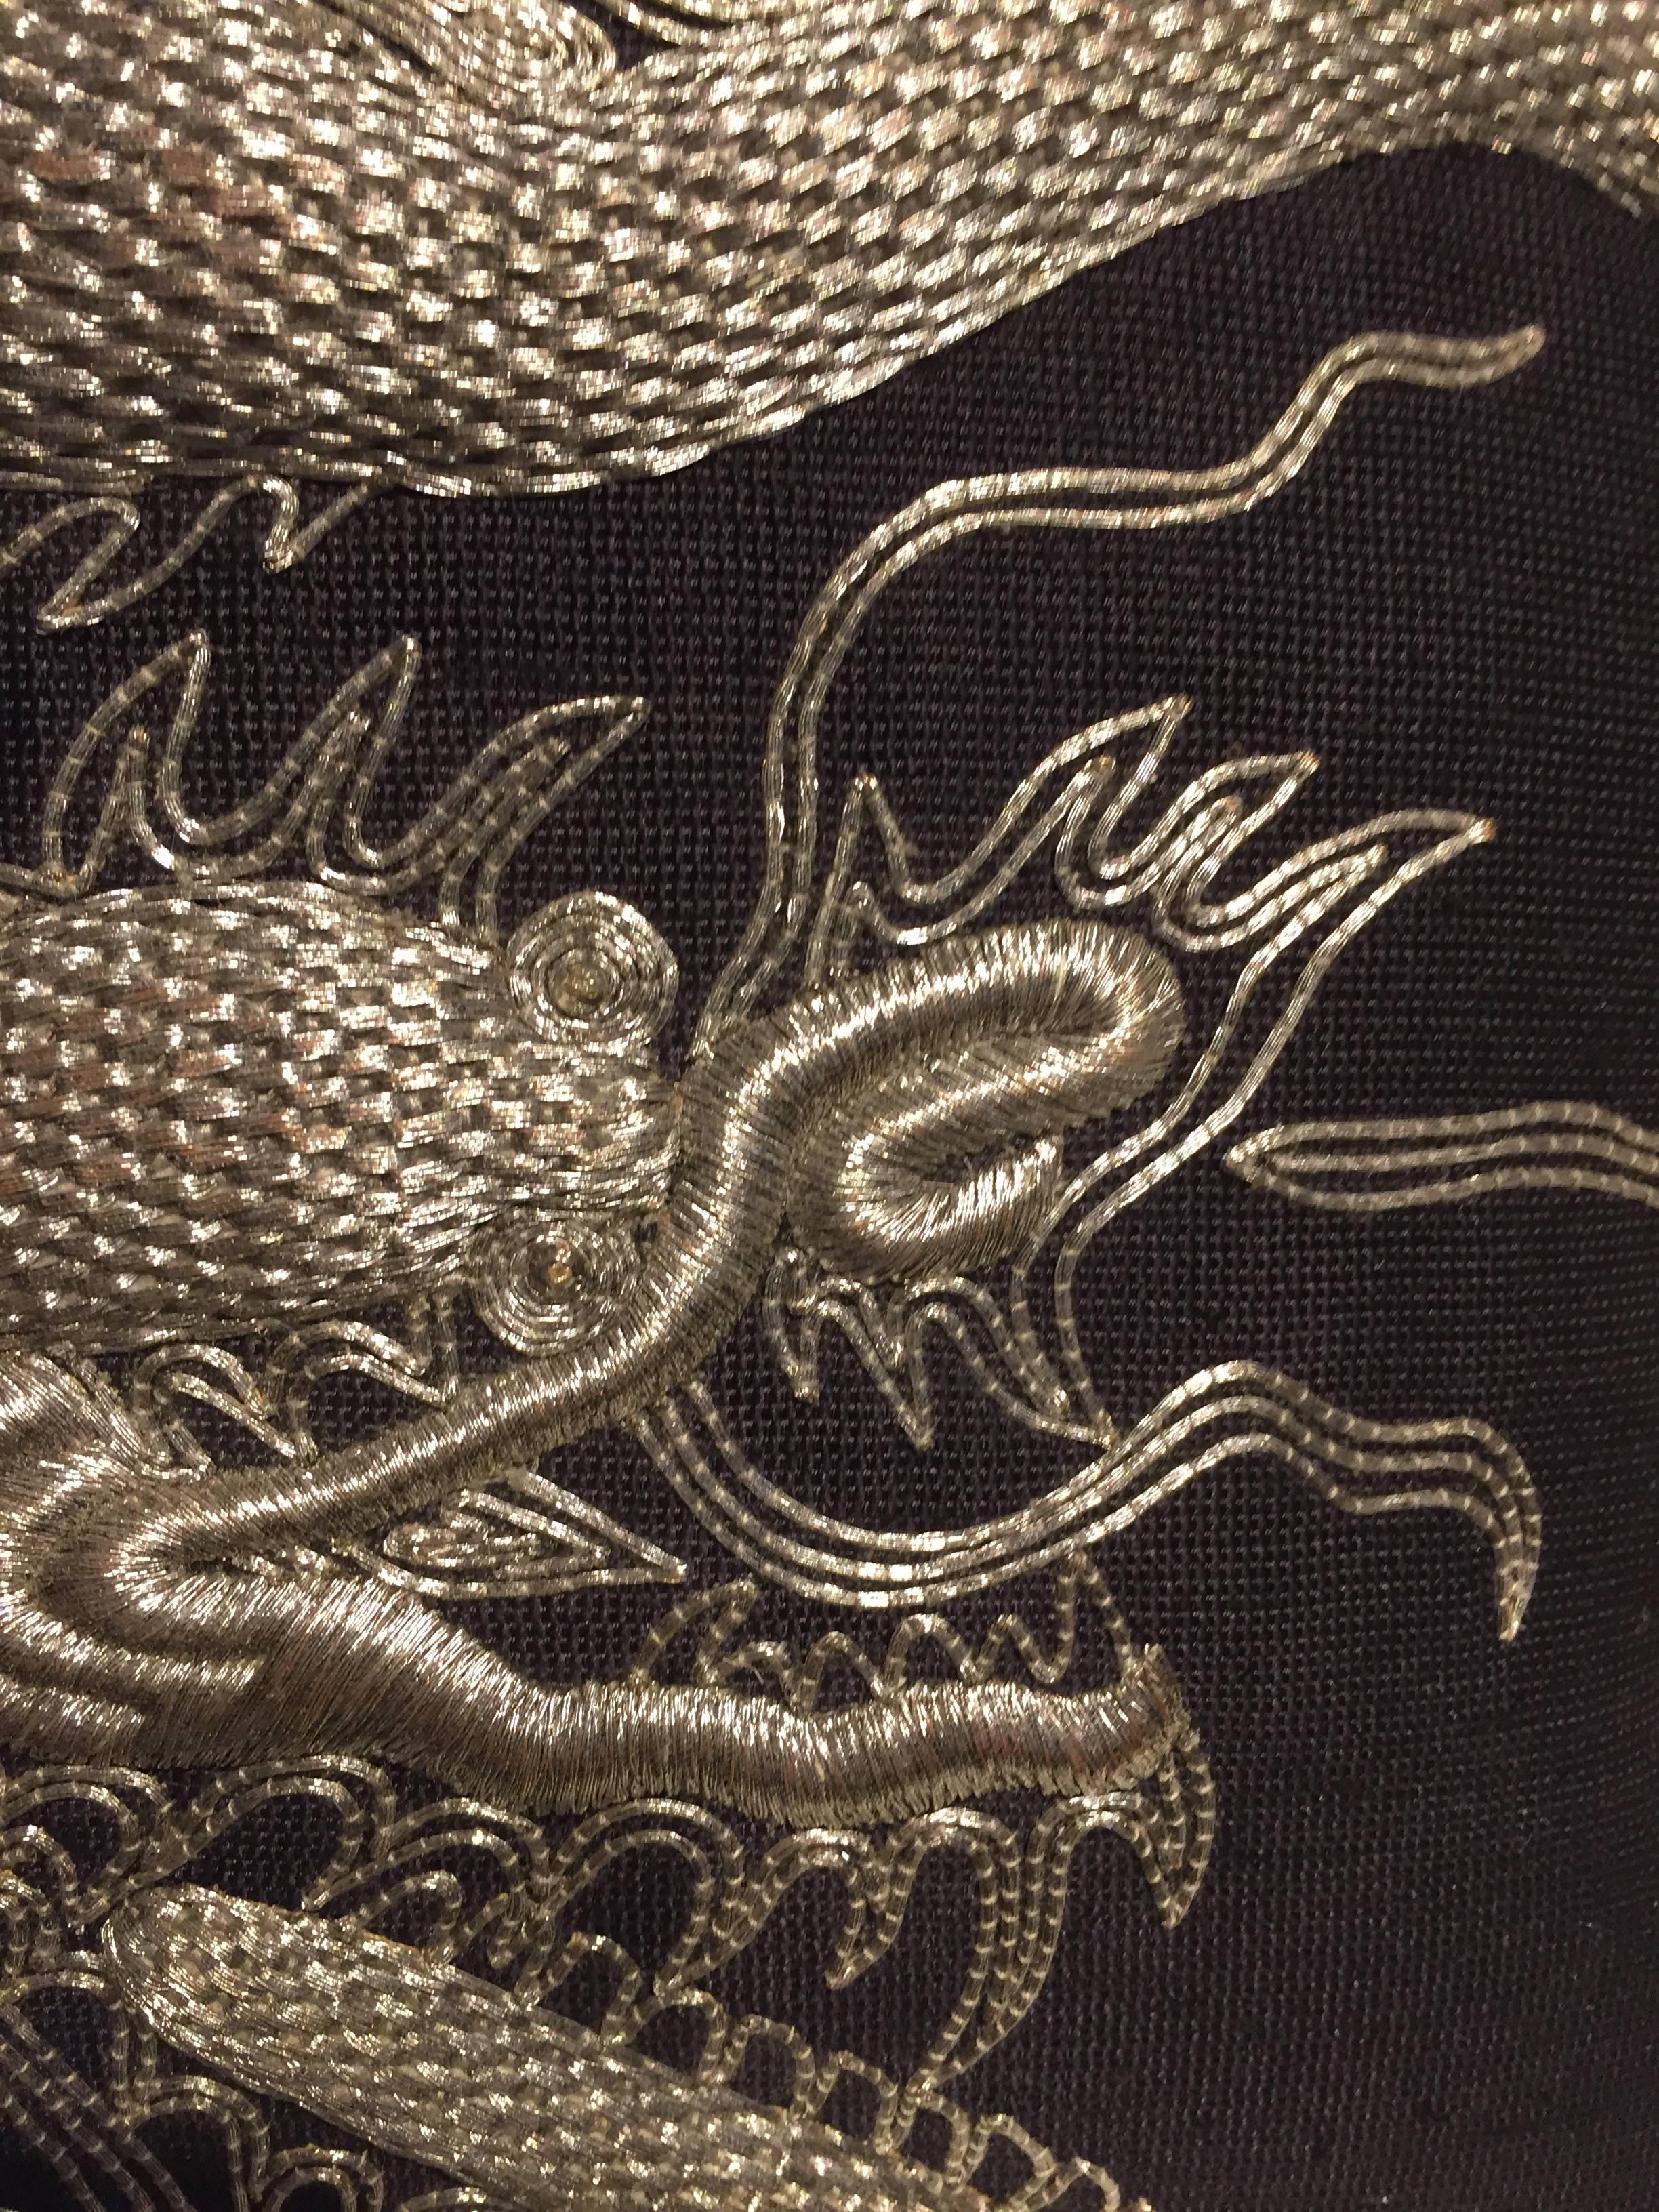 Coussin avec motif de dragon, broderie à la main en fil d'argent sur le panneau avant, dos en soie unie, tissu de base soie bruno triplet # 68, soie tissée à la main, couleur noir de jais, taille 50x50cm, housse de coussin avec doublure en coton et